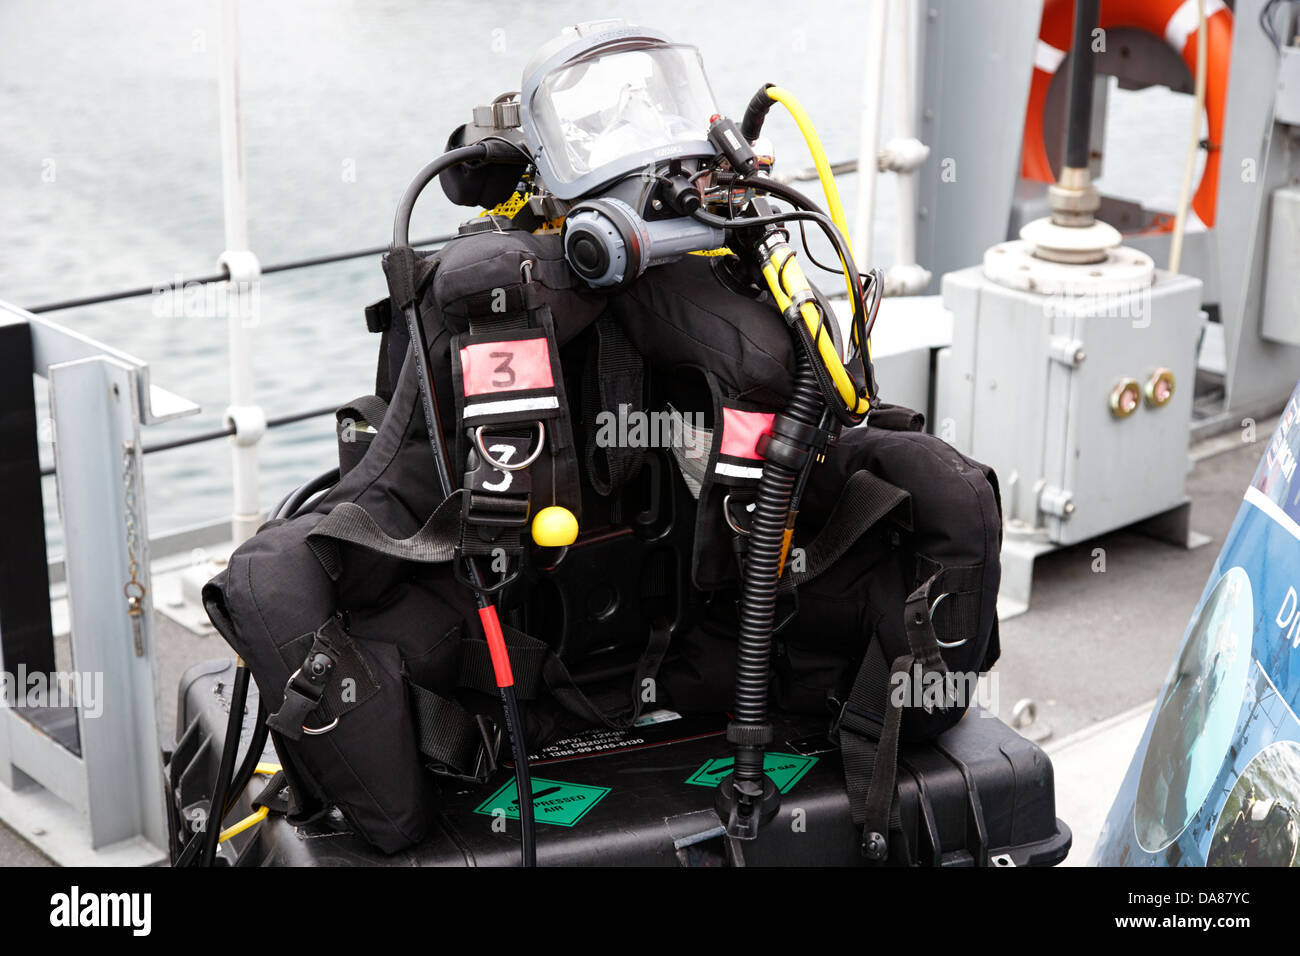 L'équipement des plongeurs de la marine britannique Banque D'Images